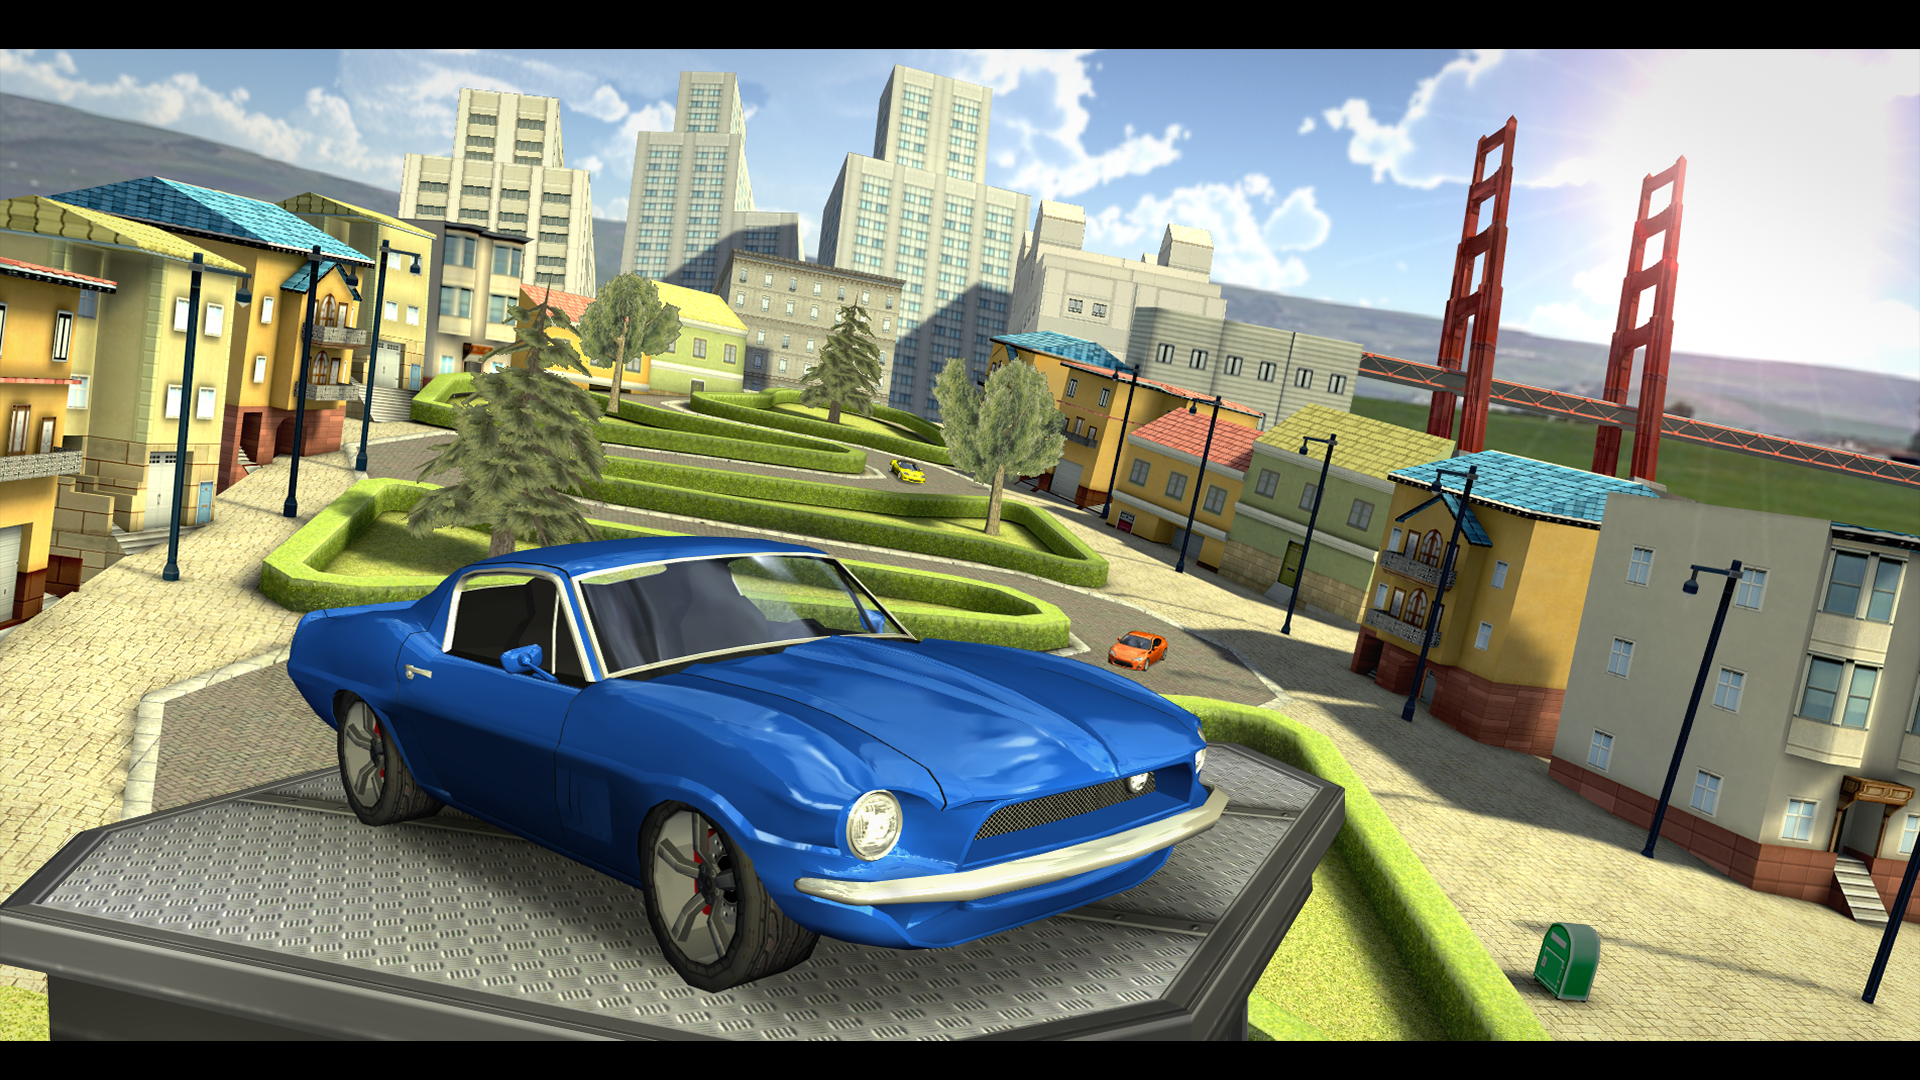 Screenshot 1 of Car Driving Simulator: SF 5.0.0